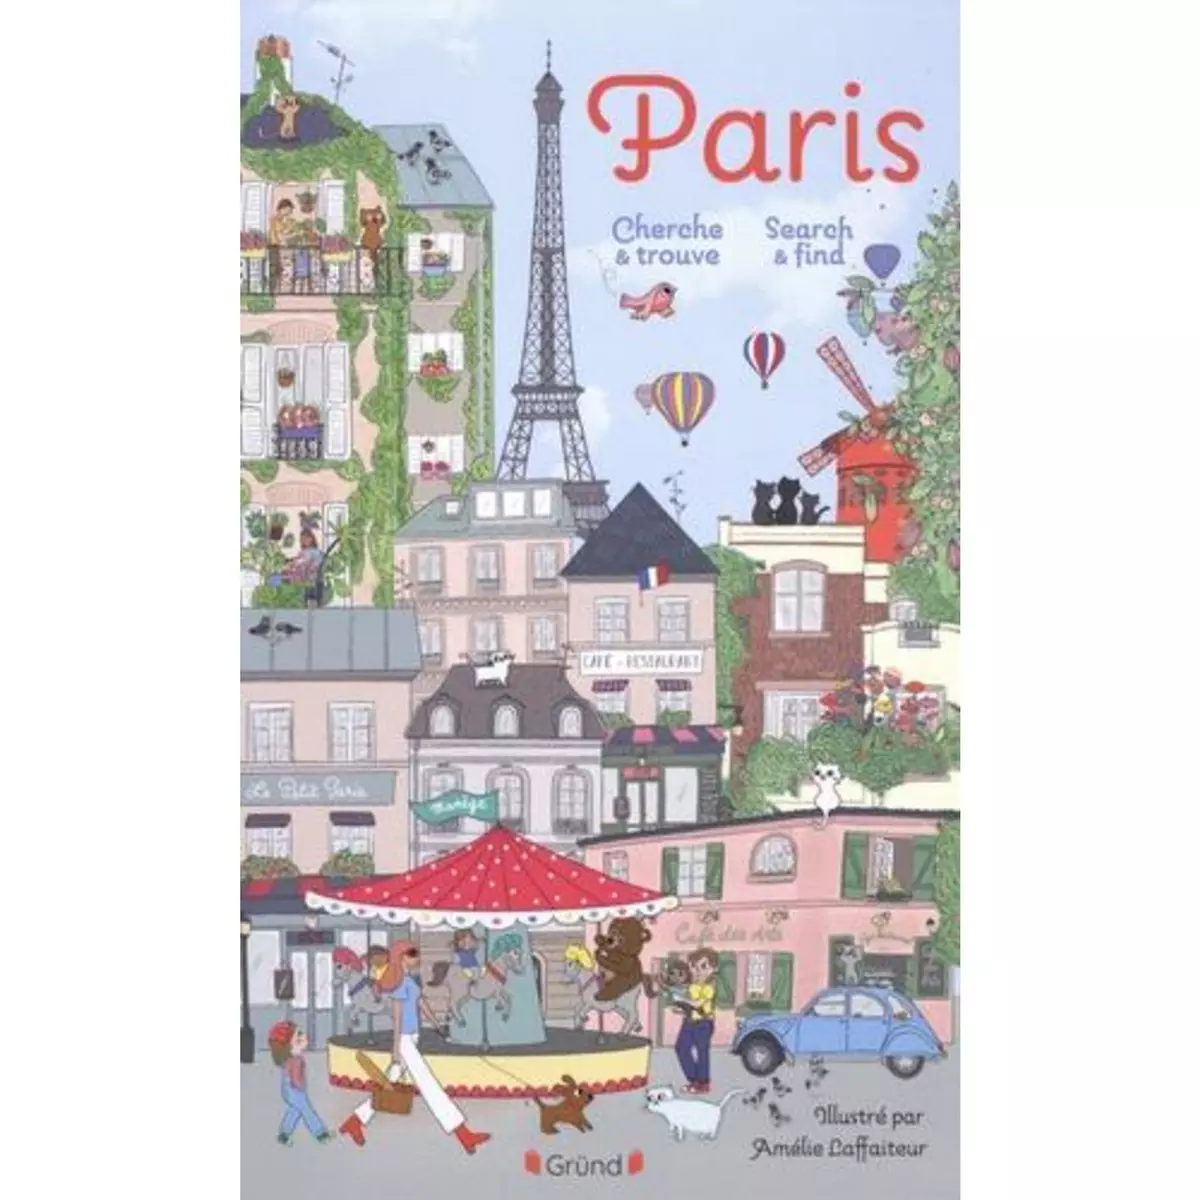  PARIS. CHERCHE ET TROUVE. SEARCH AND FIND, EDITION BILINGUE FRANCAIS-ANGLAIS, Laffaiteur Amélie